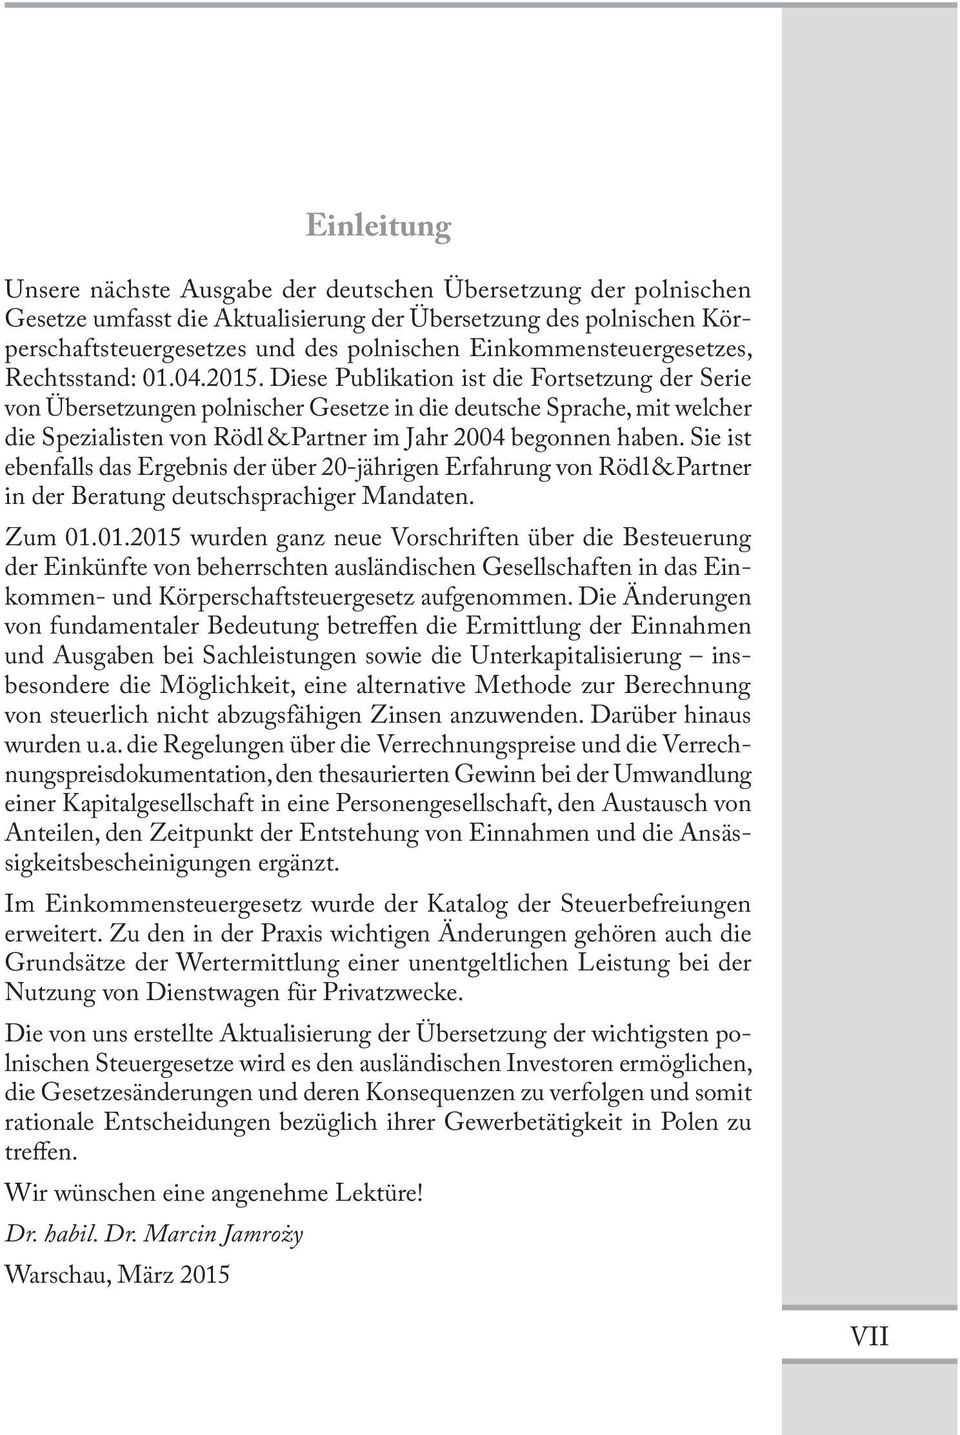 Diese Publikation ist die Fortsetzung der Serie von Übersetzungen polnischer Gesetze in die deutsche Sprache, mit welcher die Spezialisten von Rödl & Partner im Jahr 2004 begonnen haben.